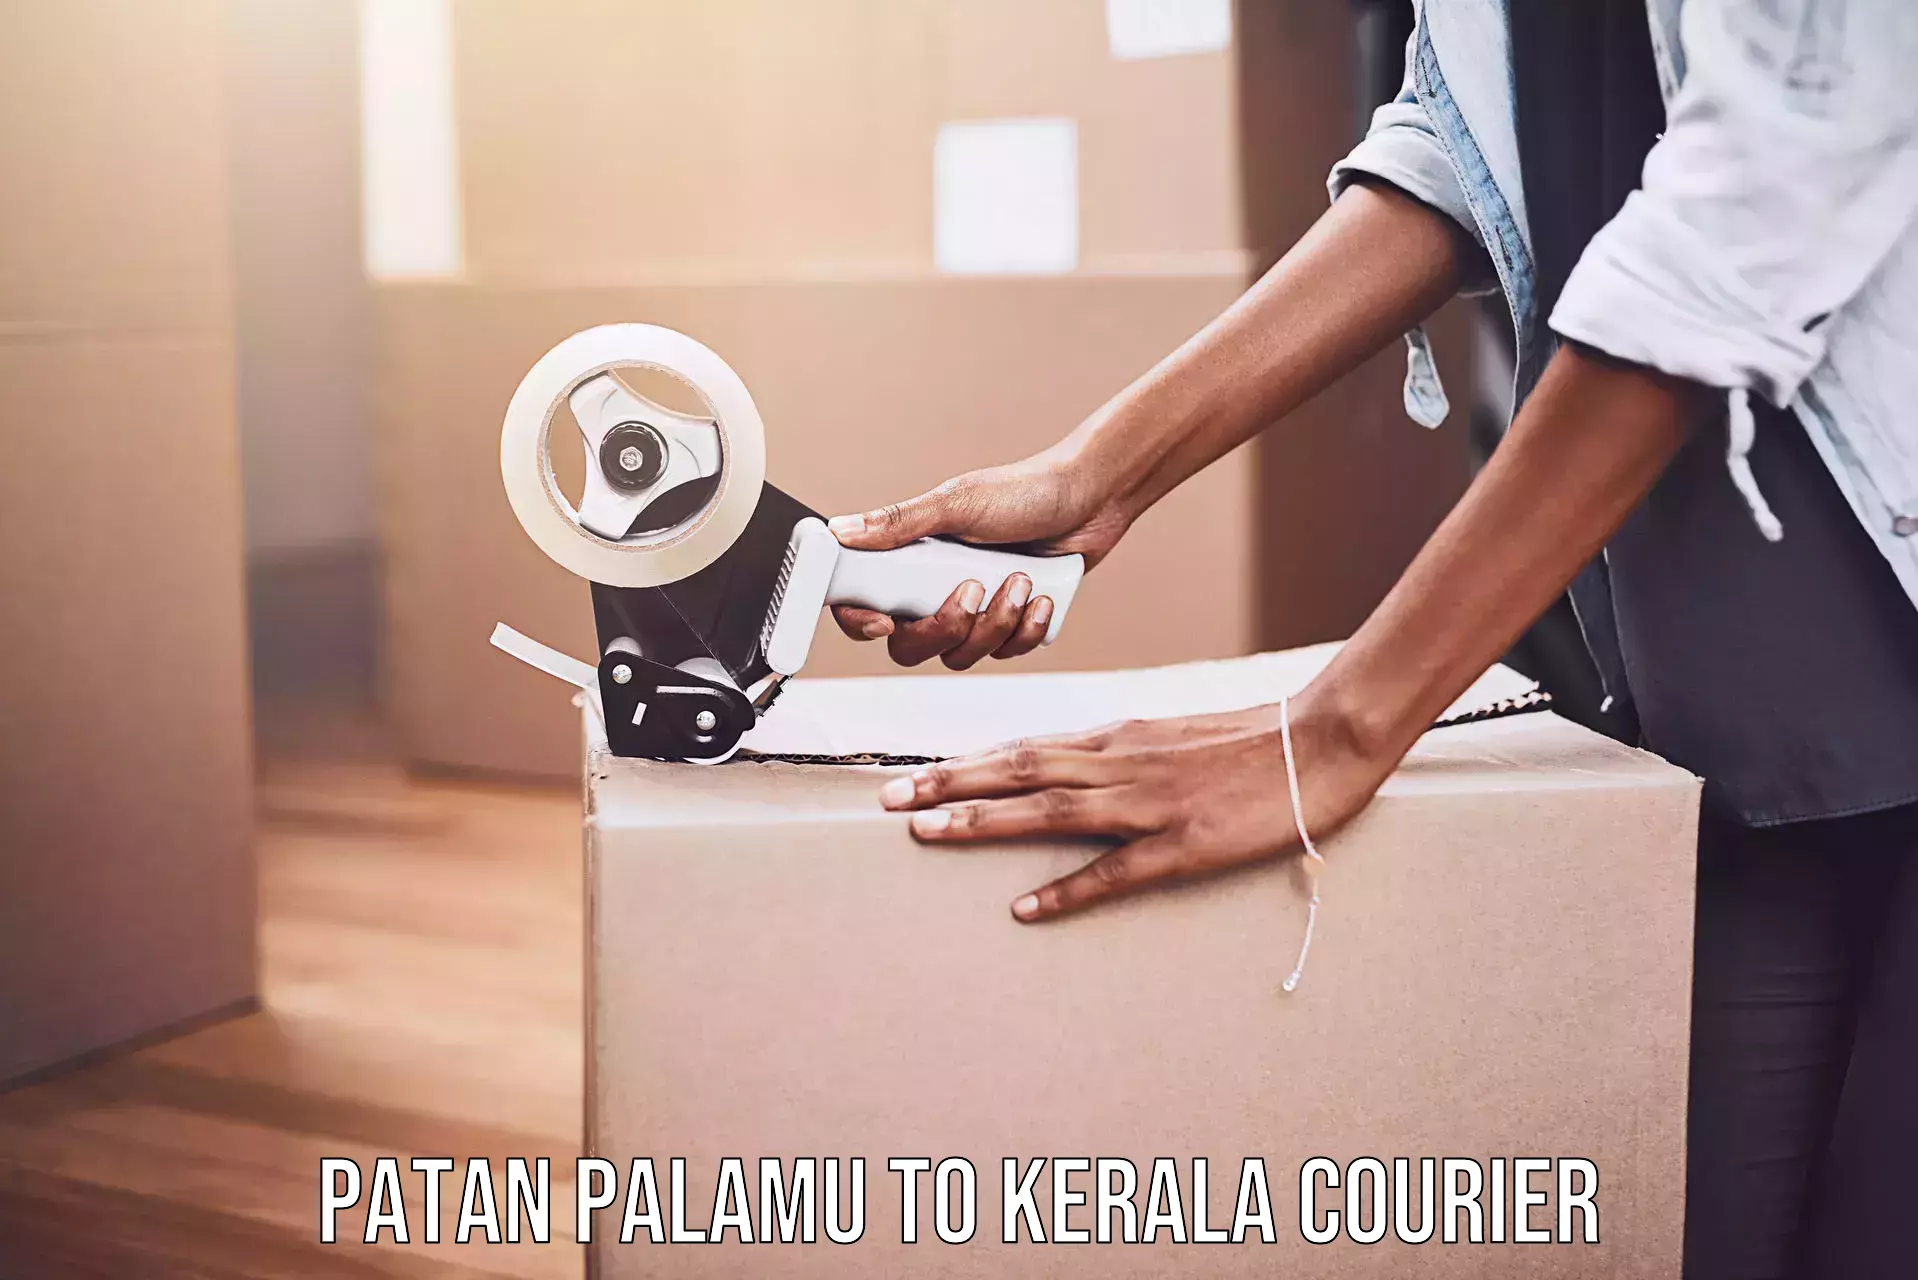 Customized delivery options Patan Palamu to Nuchiyad